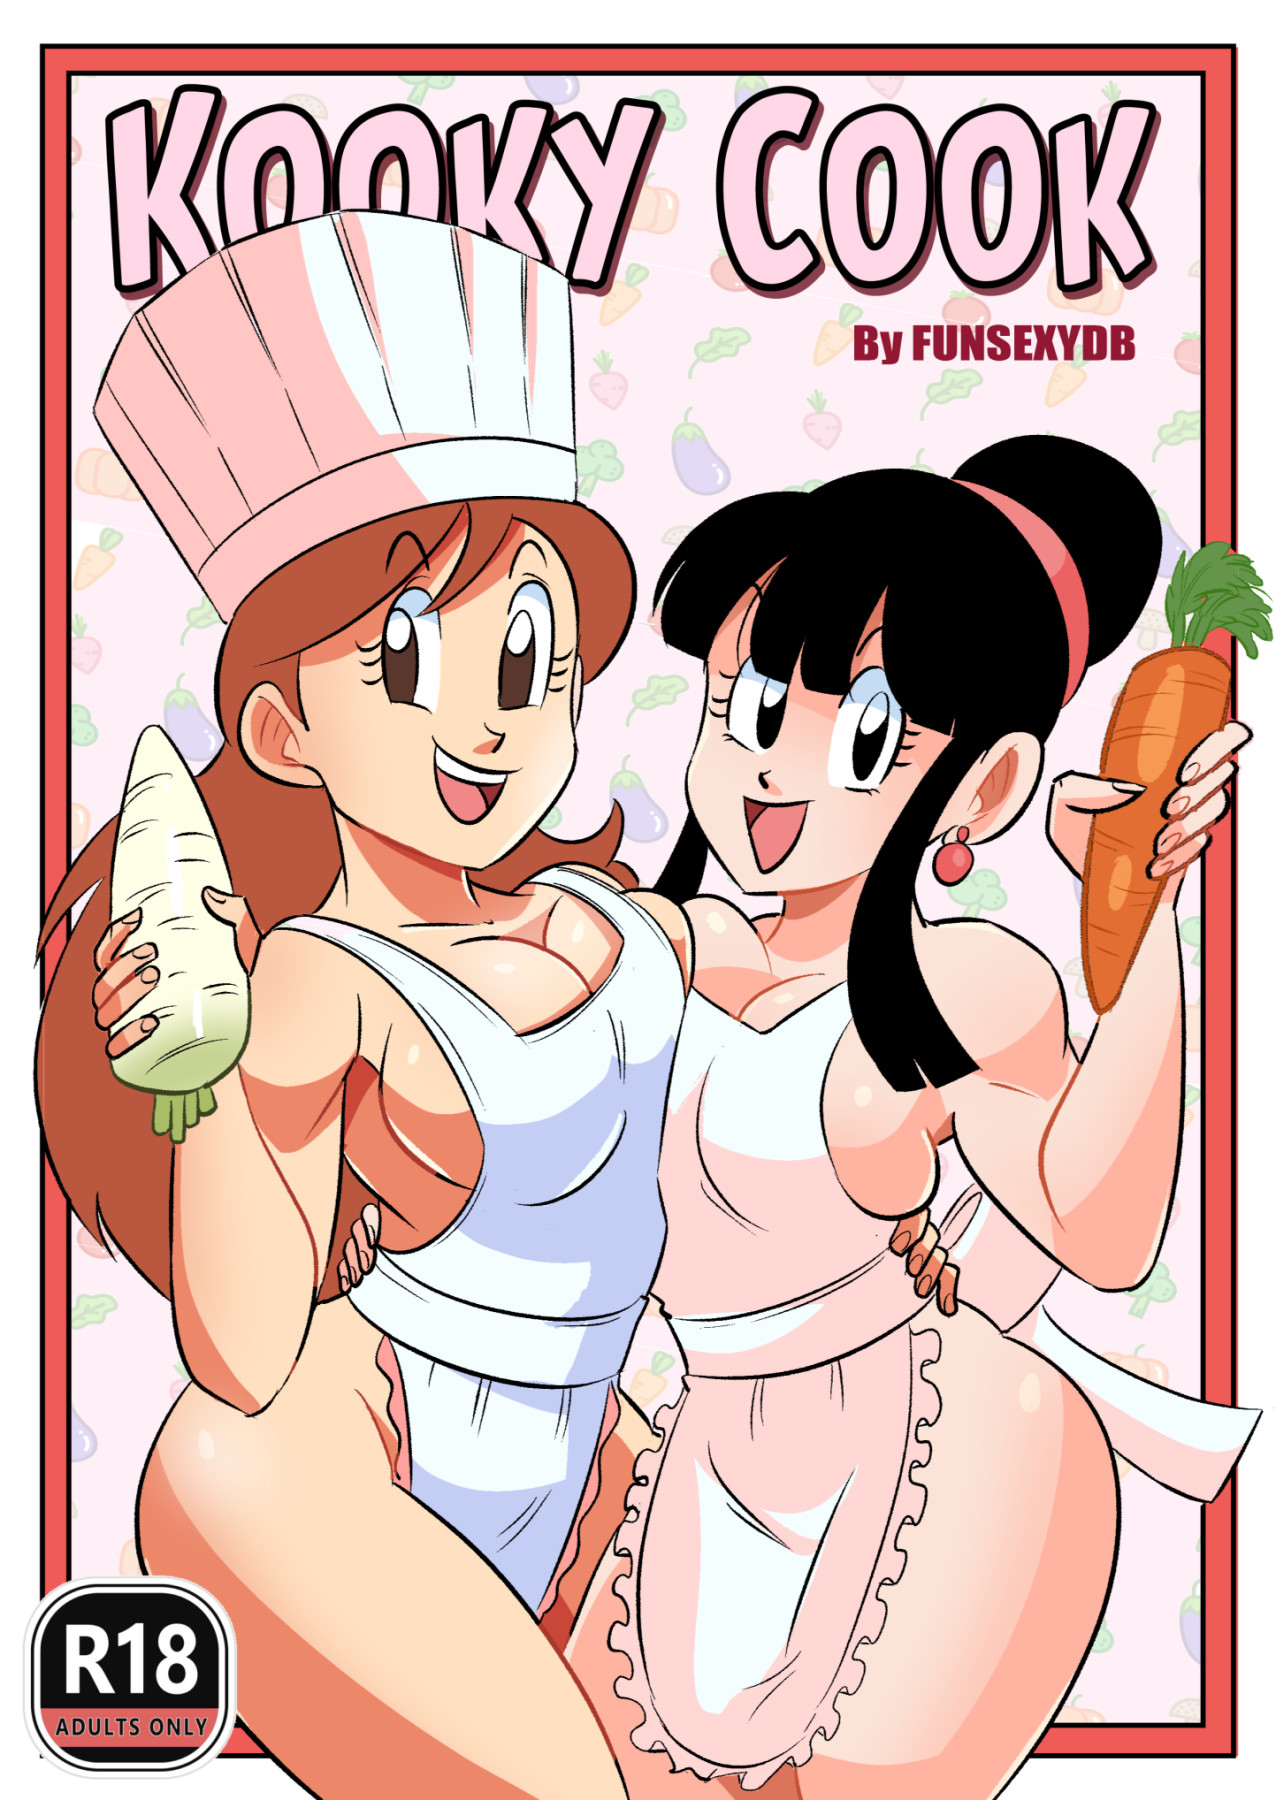 Hentai Manga Comic-Kooky Cook-v22m-Read-1